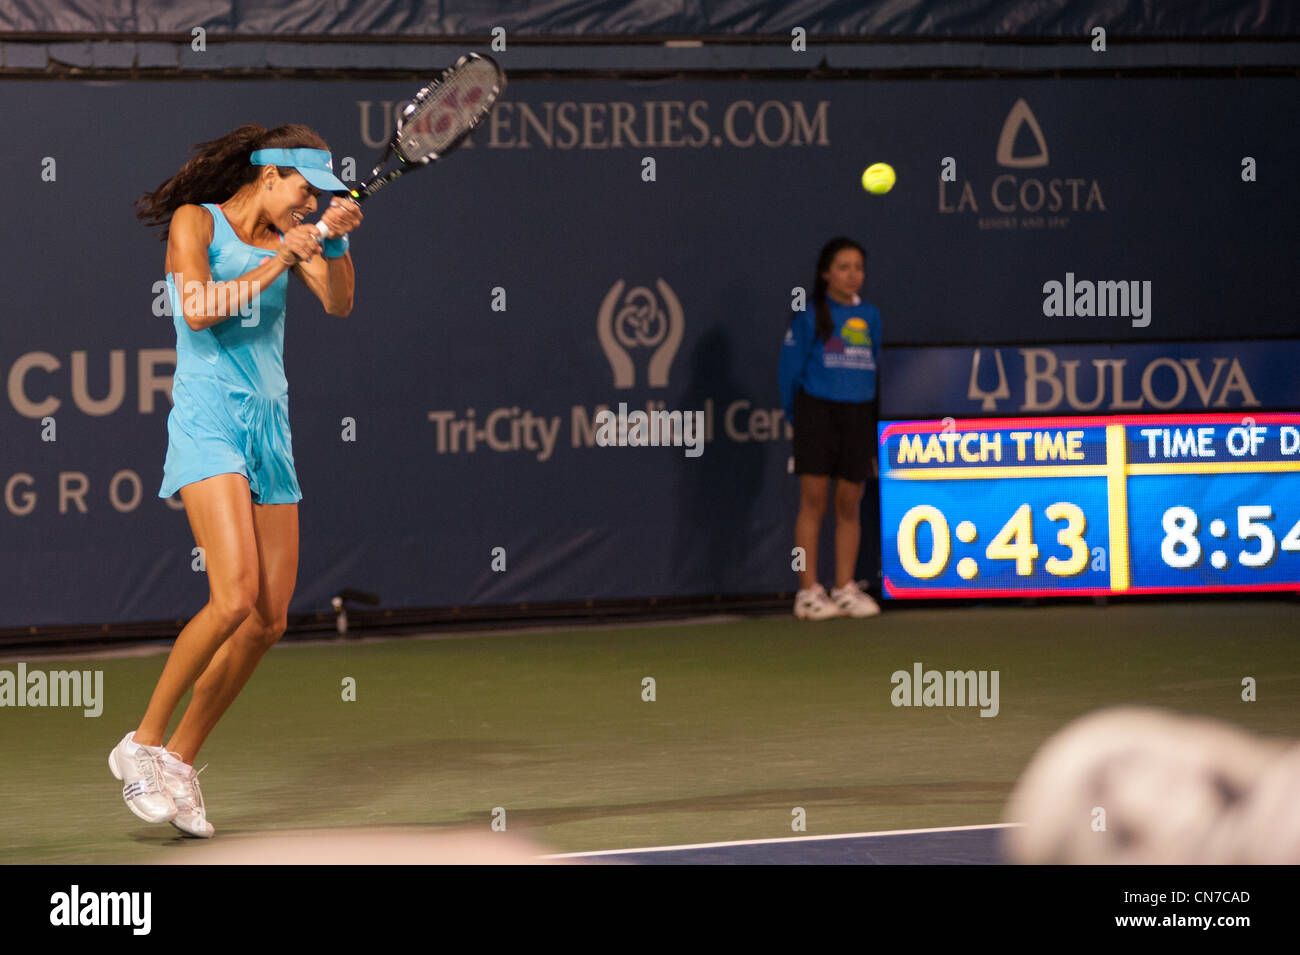 Giocatore di Tennis, Ana Ivanovic, restituisce shot presso la costa Resort durante il mercurio aperto di assicurazione. Foto Stock